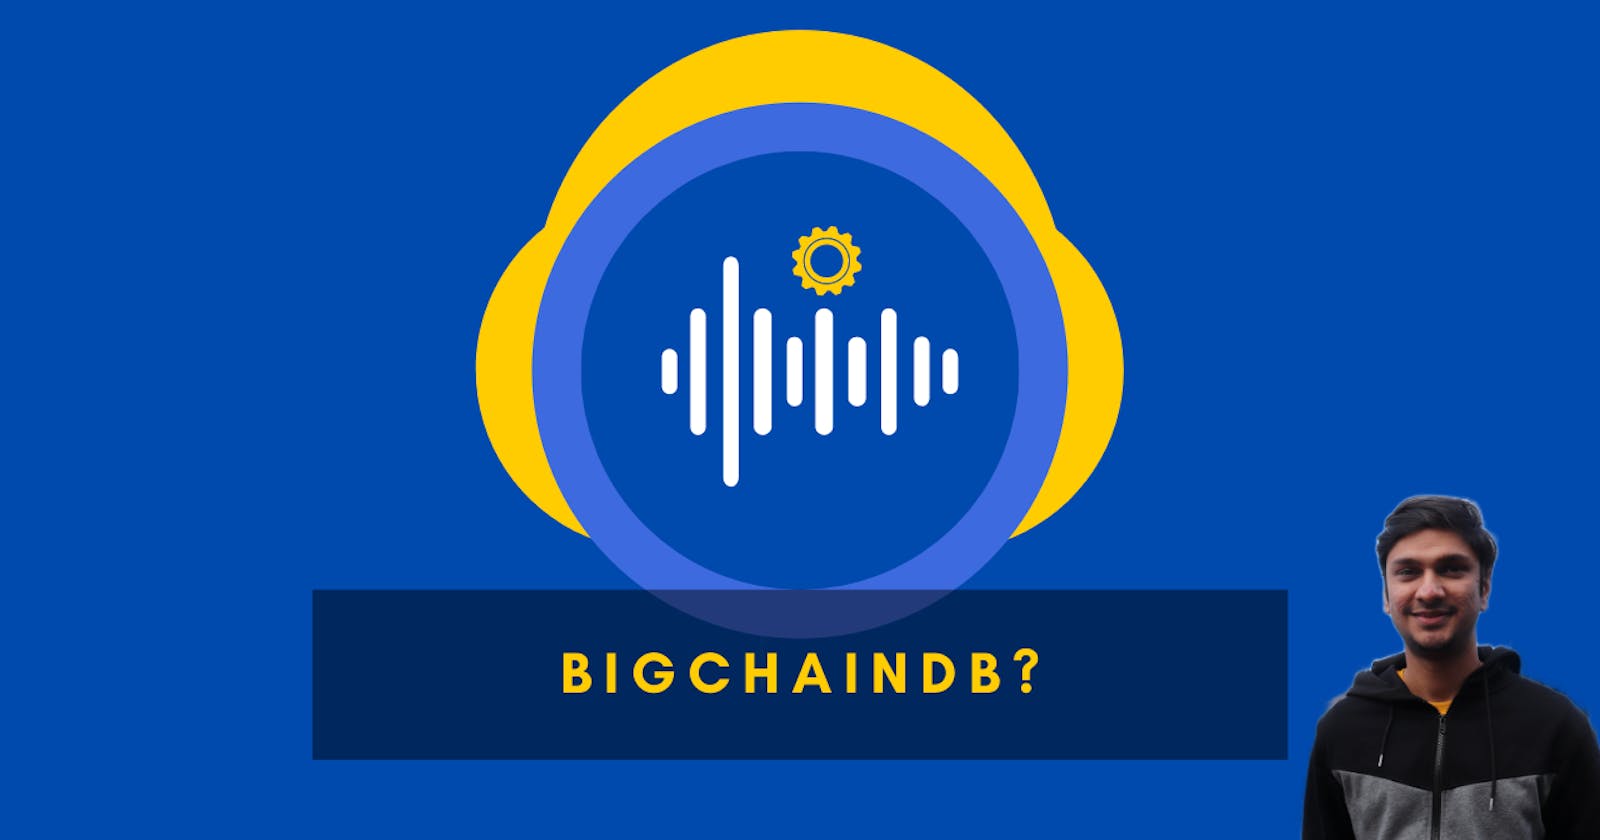 BigchainDB - The new blockchain database?